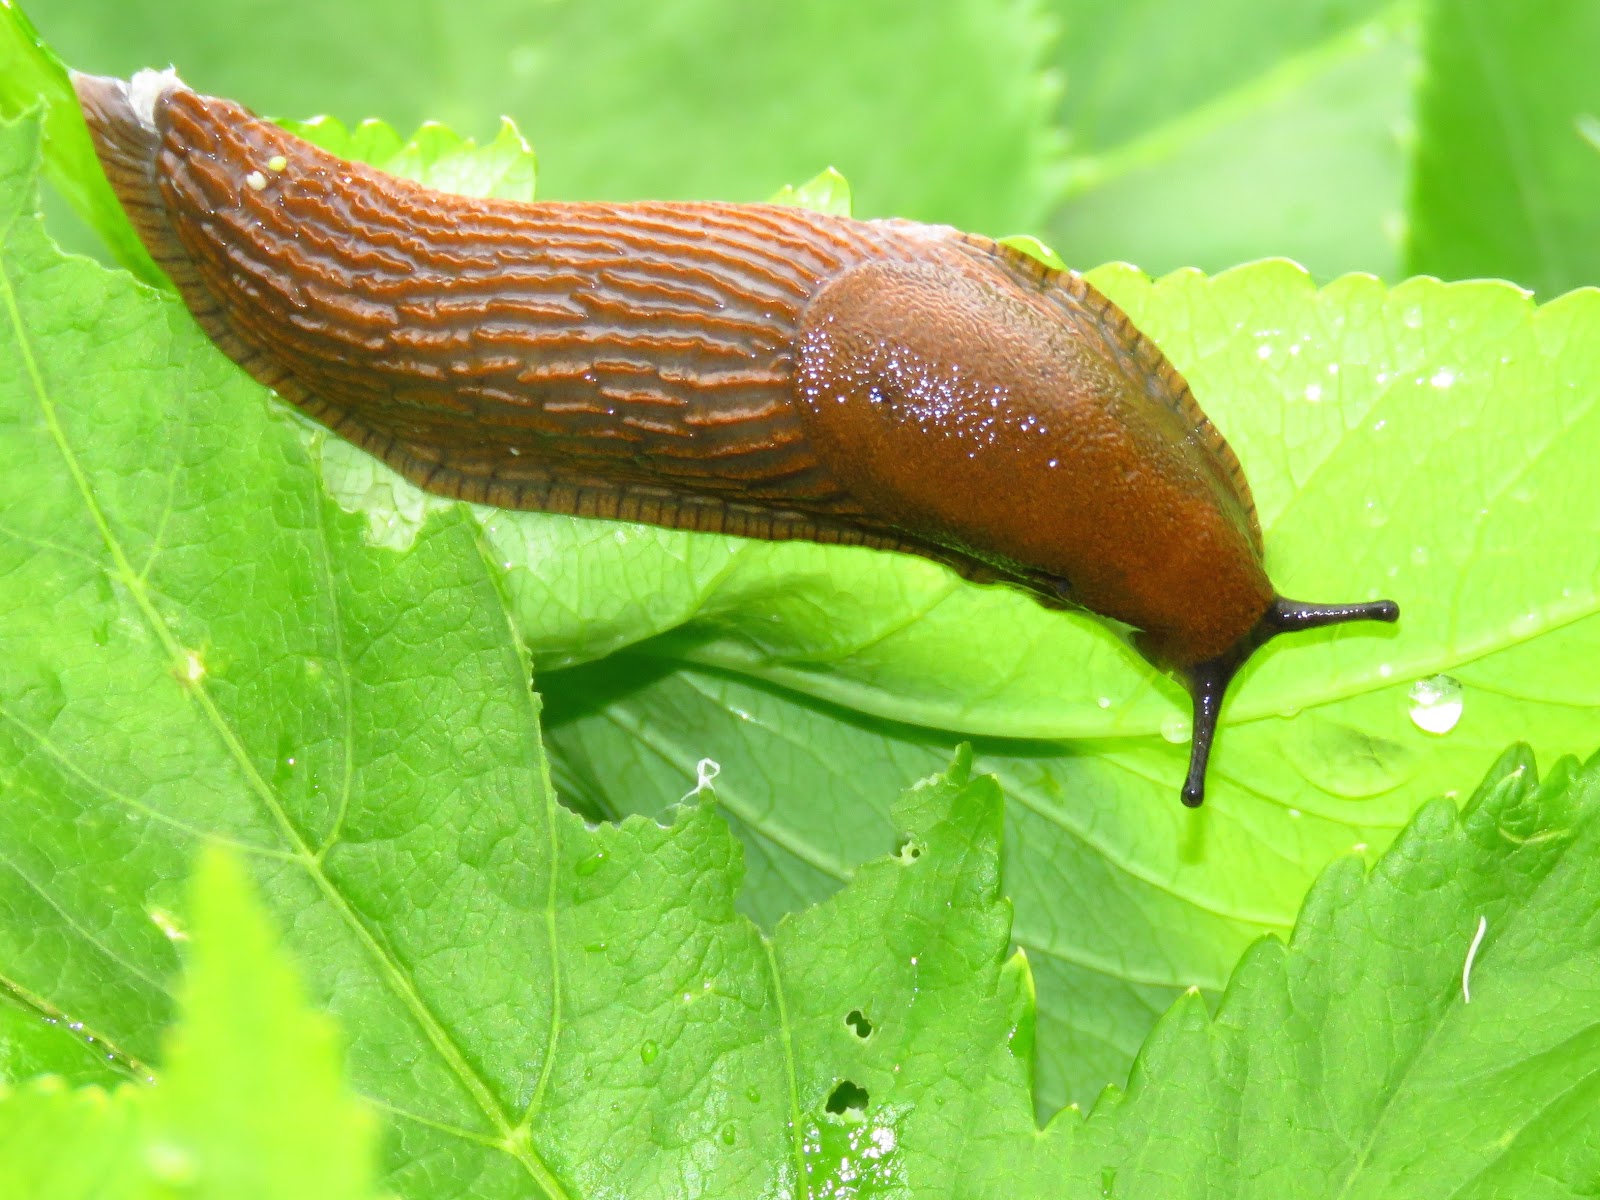 BugBlog: A Slug day